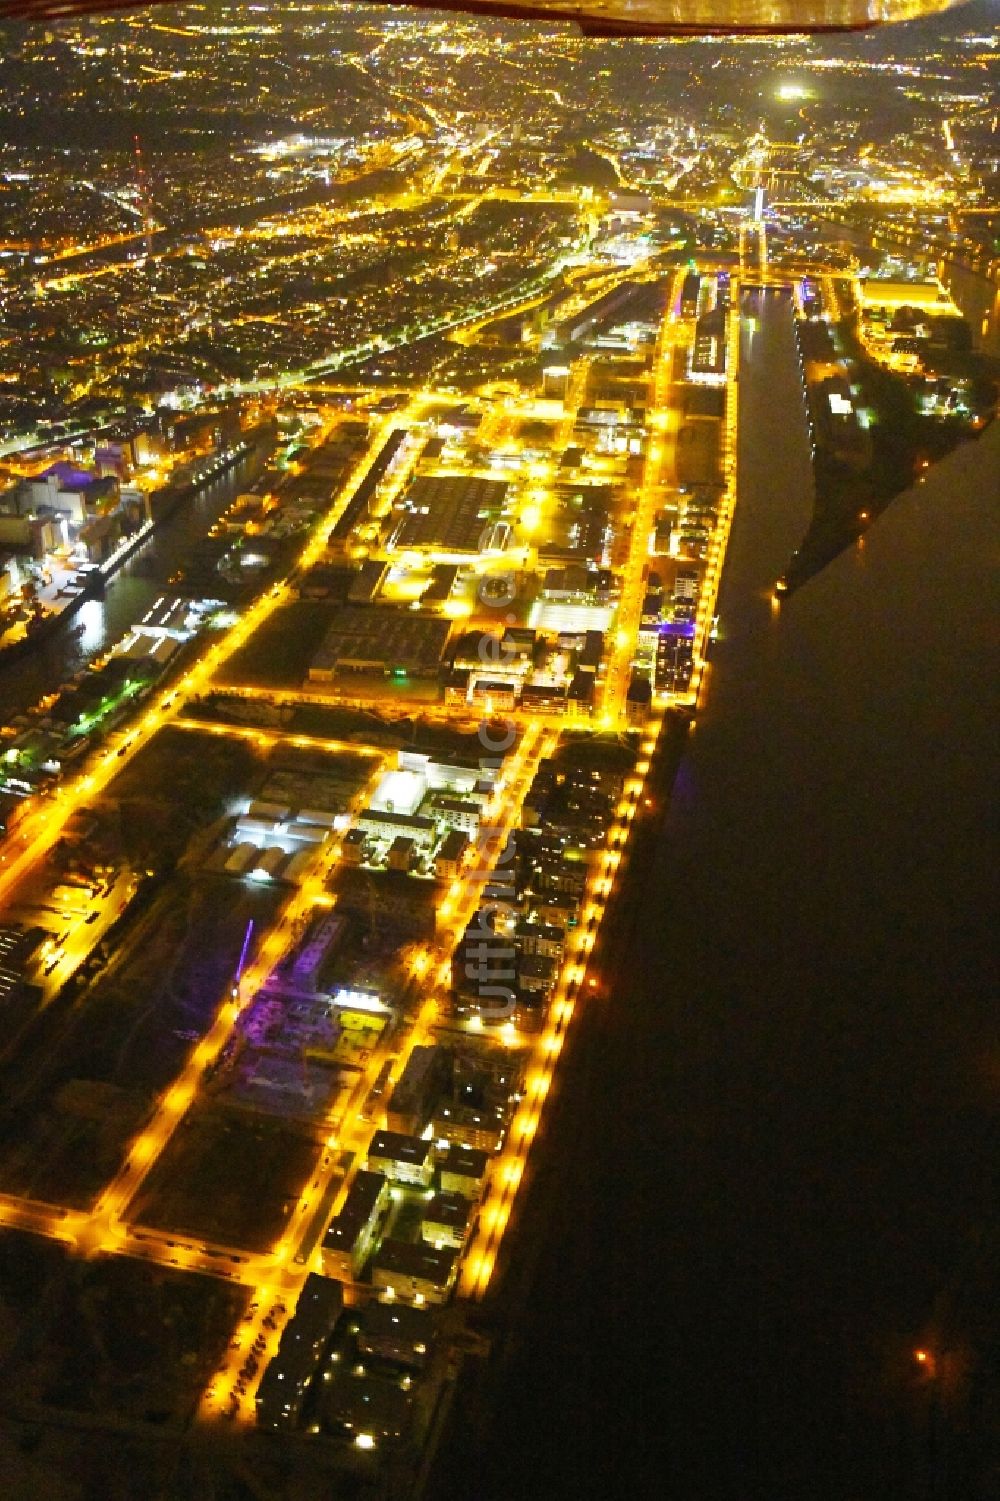 Nacht-Luftaufnahme Bremen - Nachtluftbild Hafenanlagen am Ufer des Hafenbeckens Am Speicher im Ortsteil Walle in Bremen, Deutschland